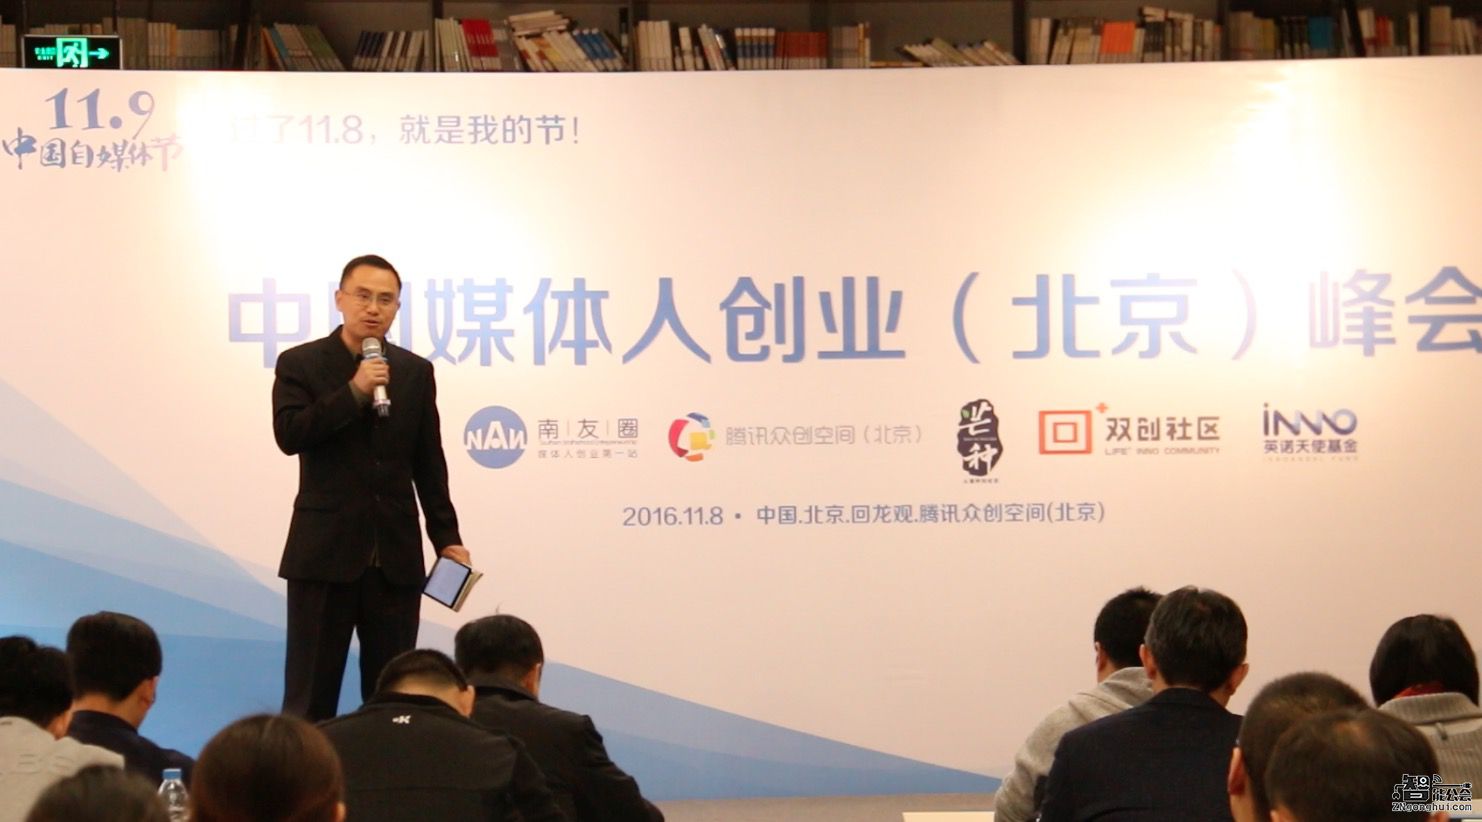 百家自媒体联盟倡议发起11.9中国自媒体节 智能公会